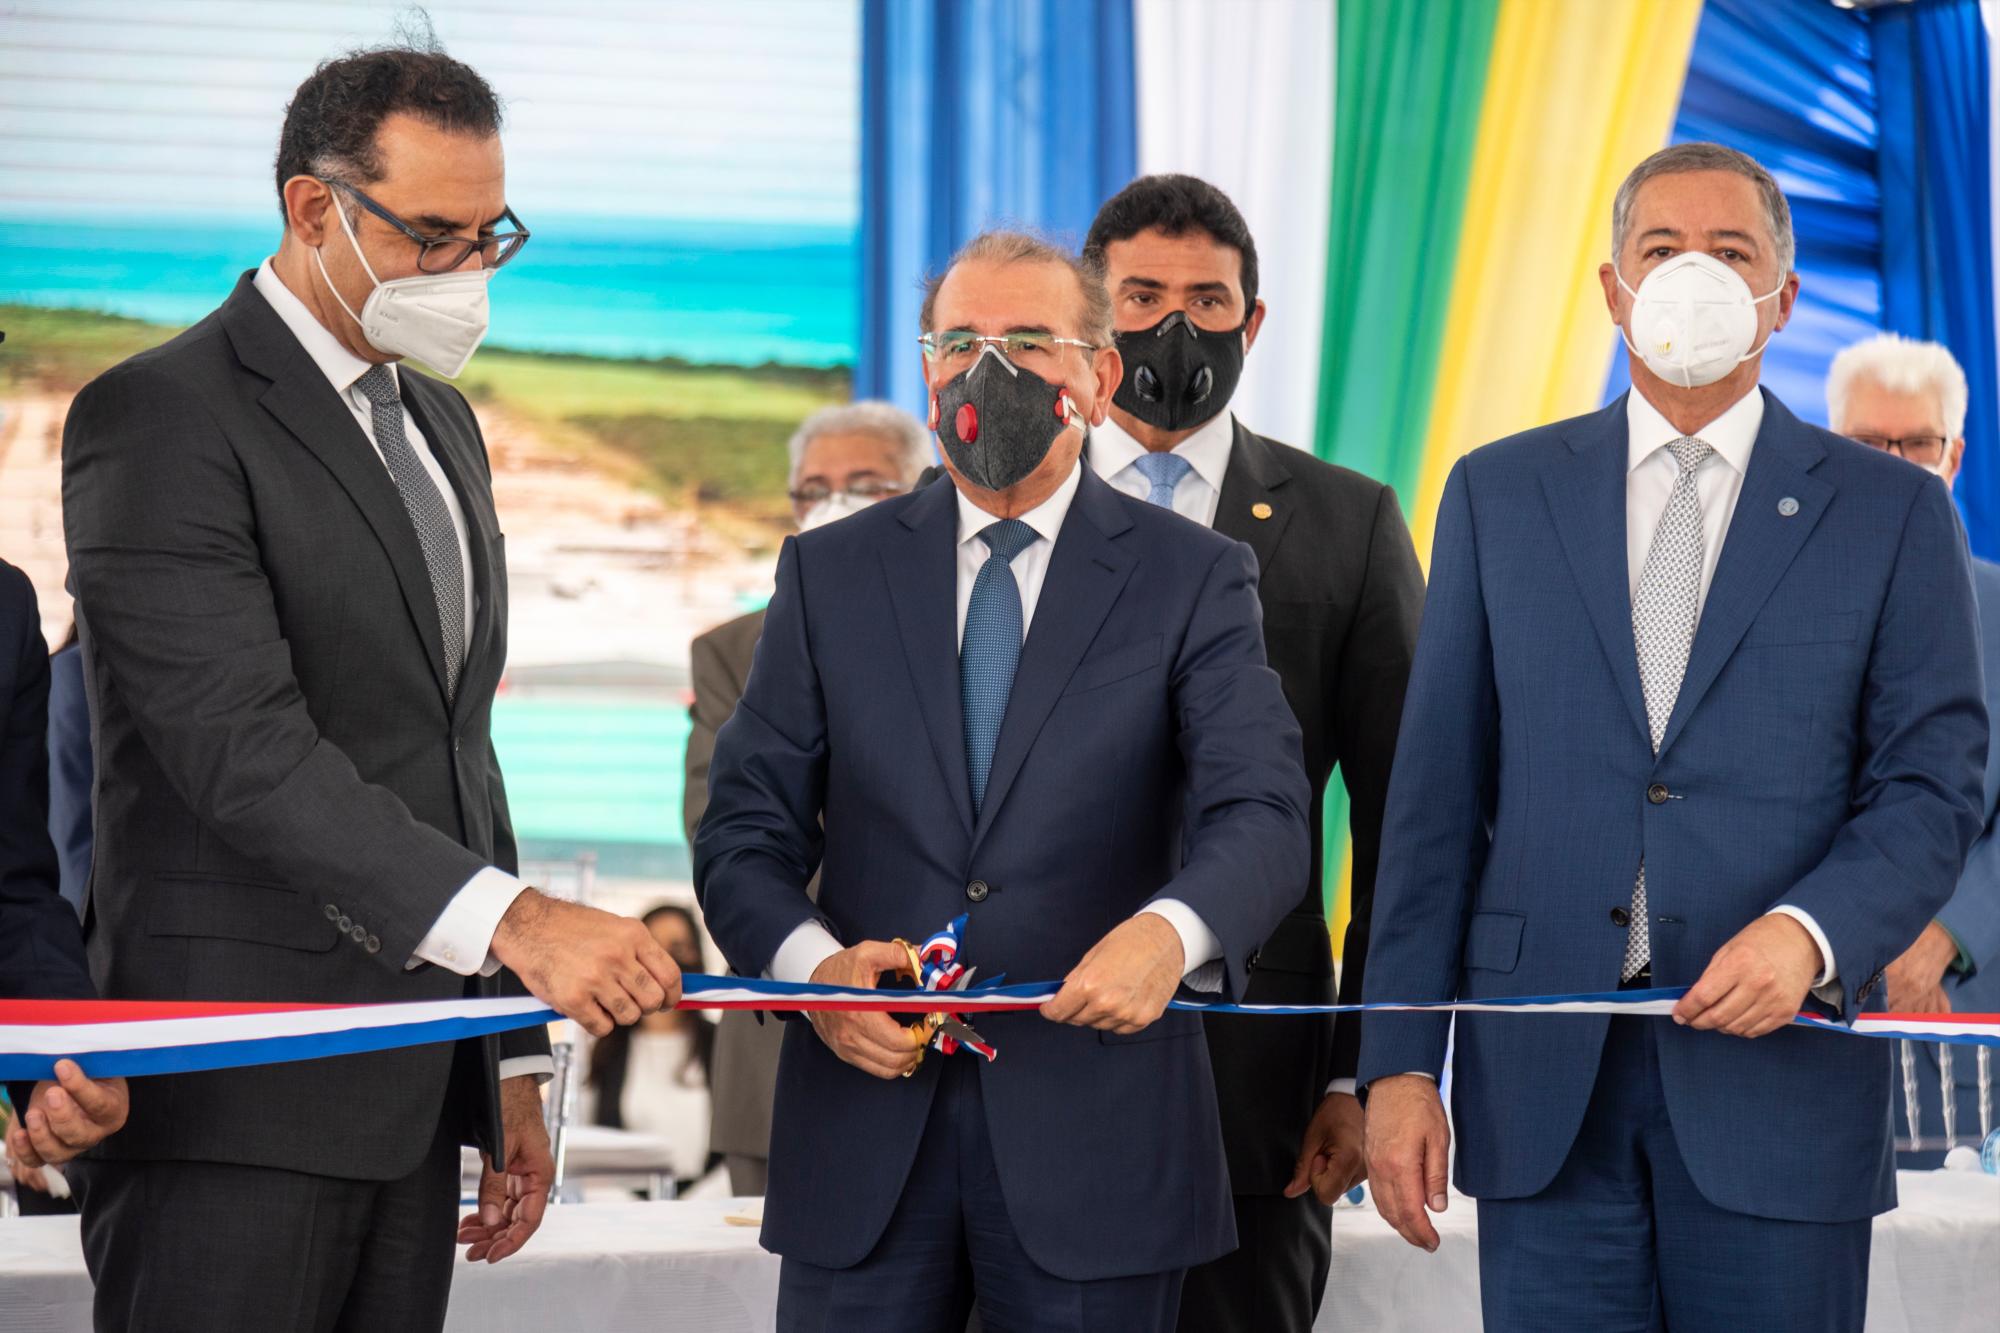 Con el acostumbrado corte de cinta, el presidente Danilo Medina dejó oficialmente inaugurada la Termoeléctrica Punta Catalina. Foto: Pedro Bazil/Diario Libre